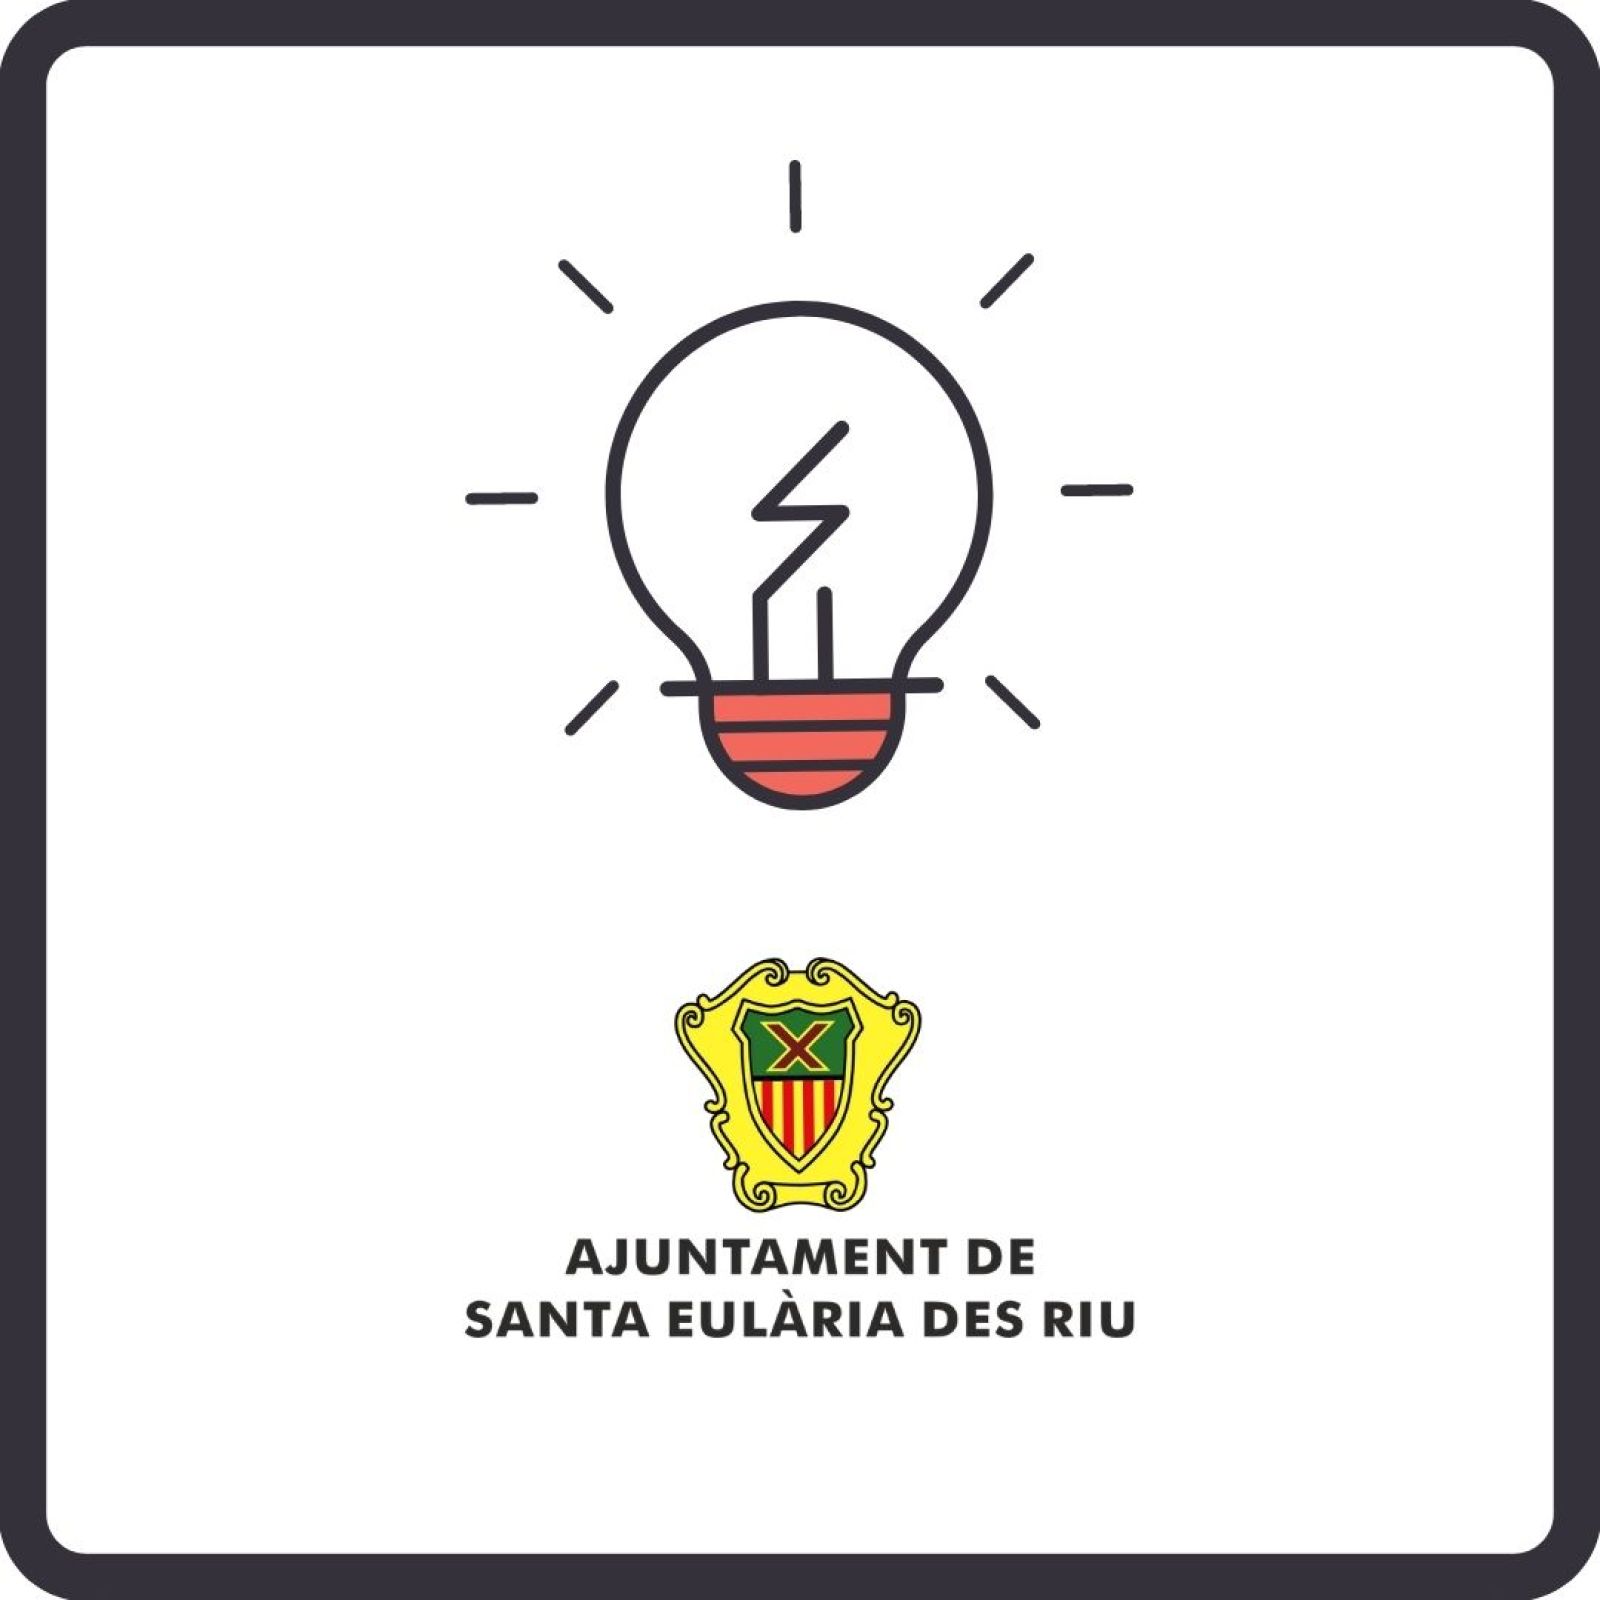 Corte temporal del suministro de energía eléctrica en diferentes zonas de Santa Eulària des Riu el día 11 de agosto